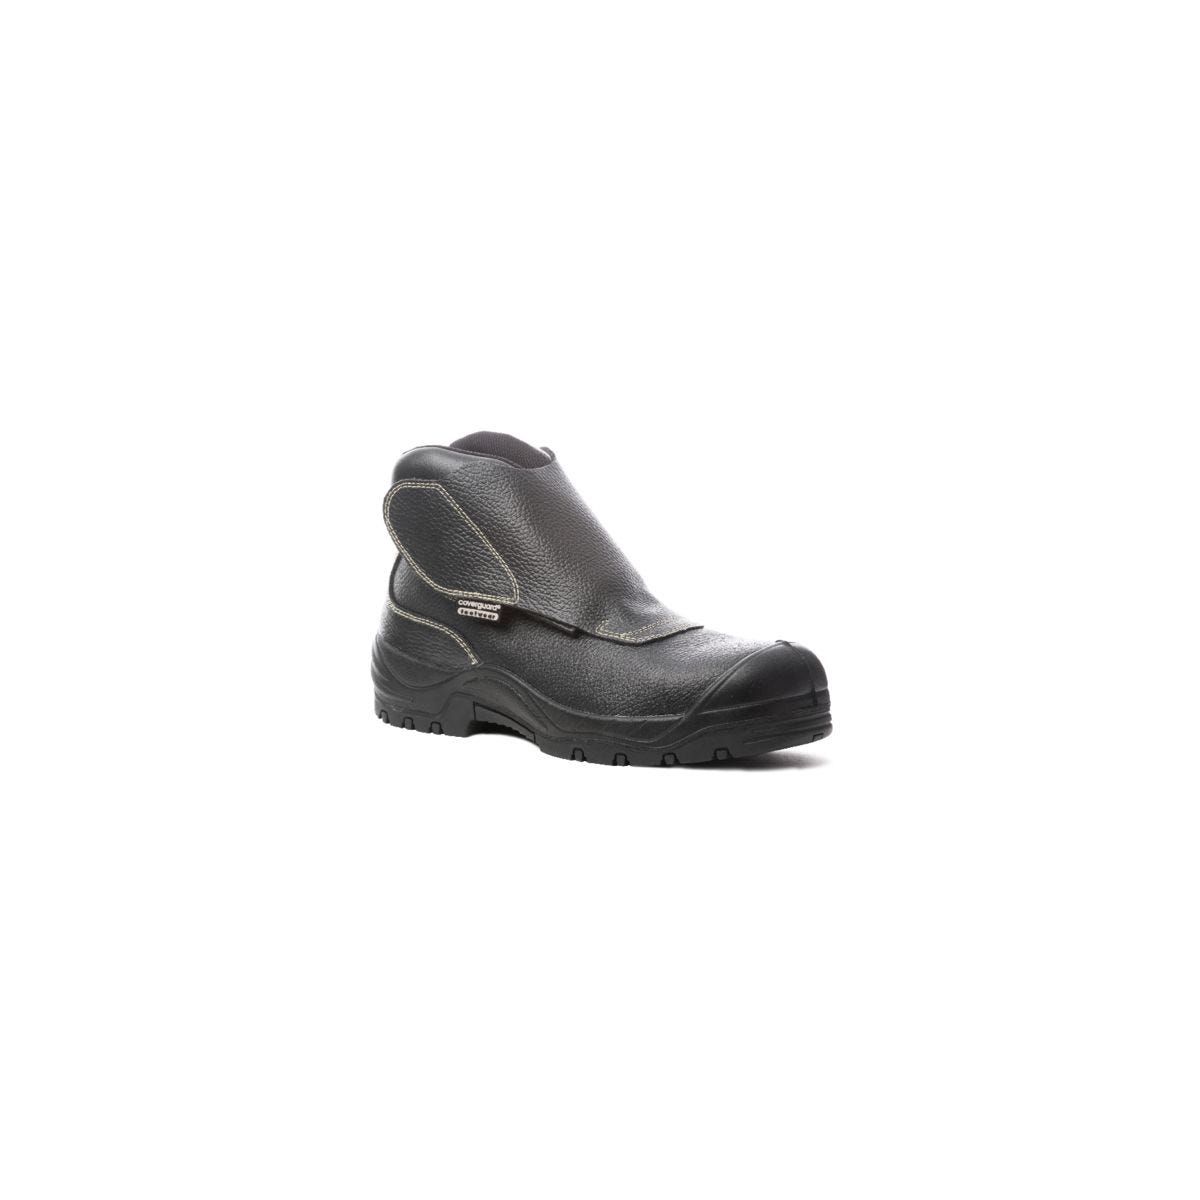 Chaussure de sécurité QUADRUFITE S3 soudeur composite noire - COVERGUARD - Taille 41 0